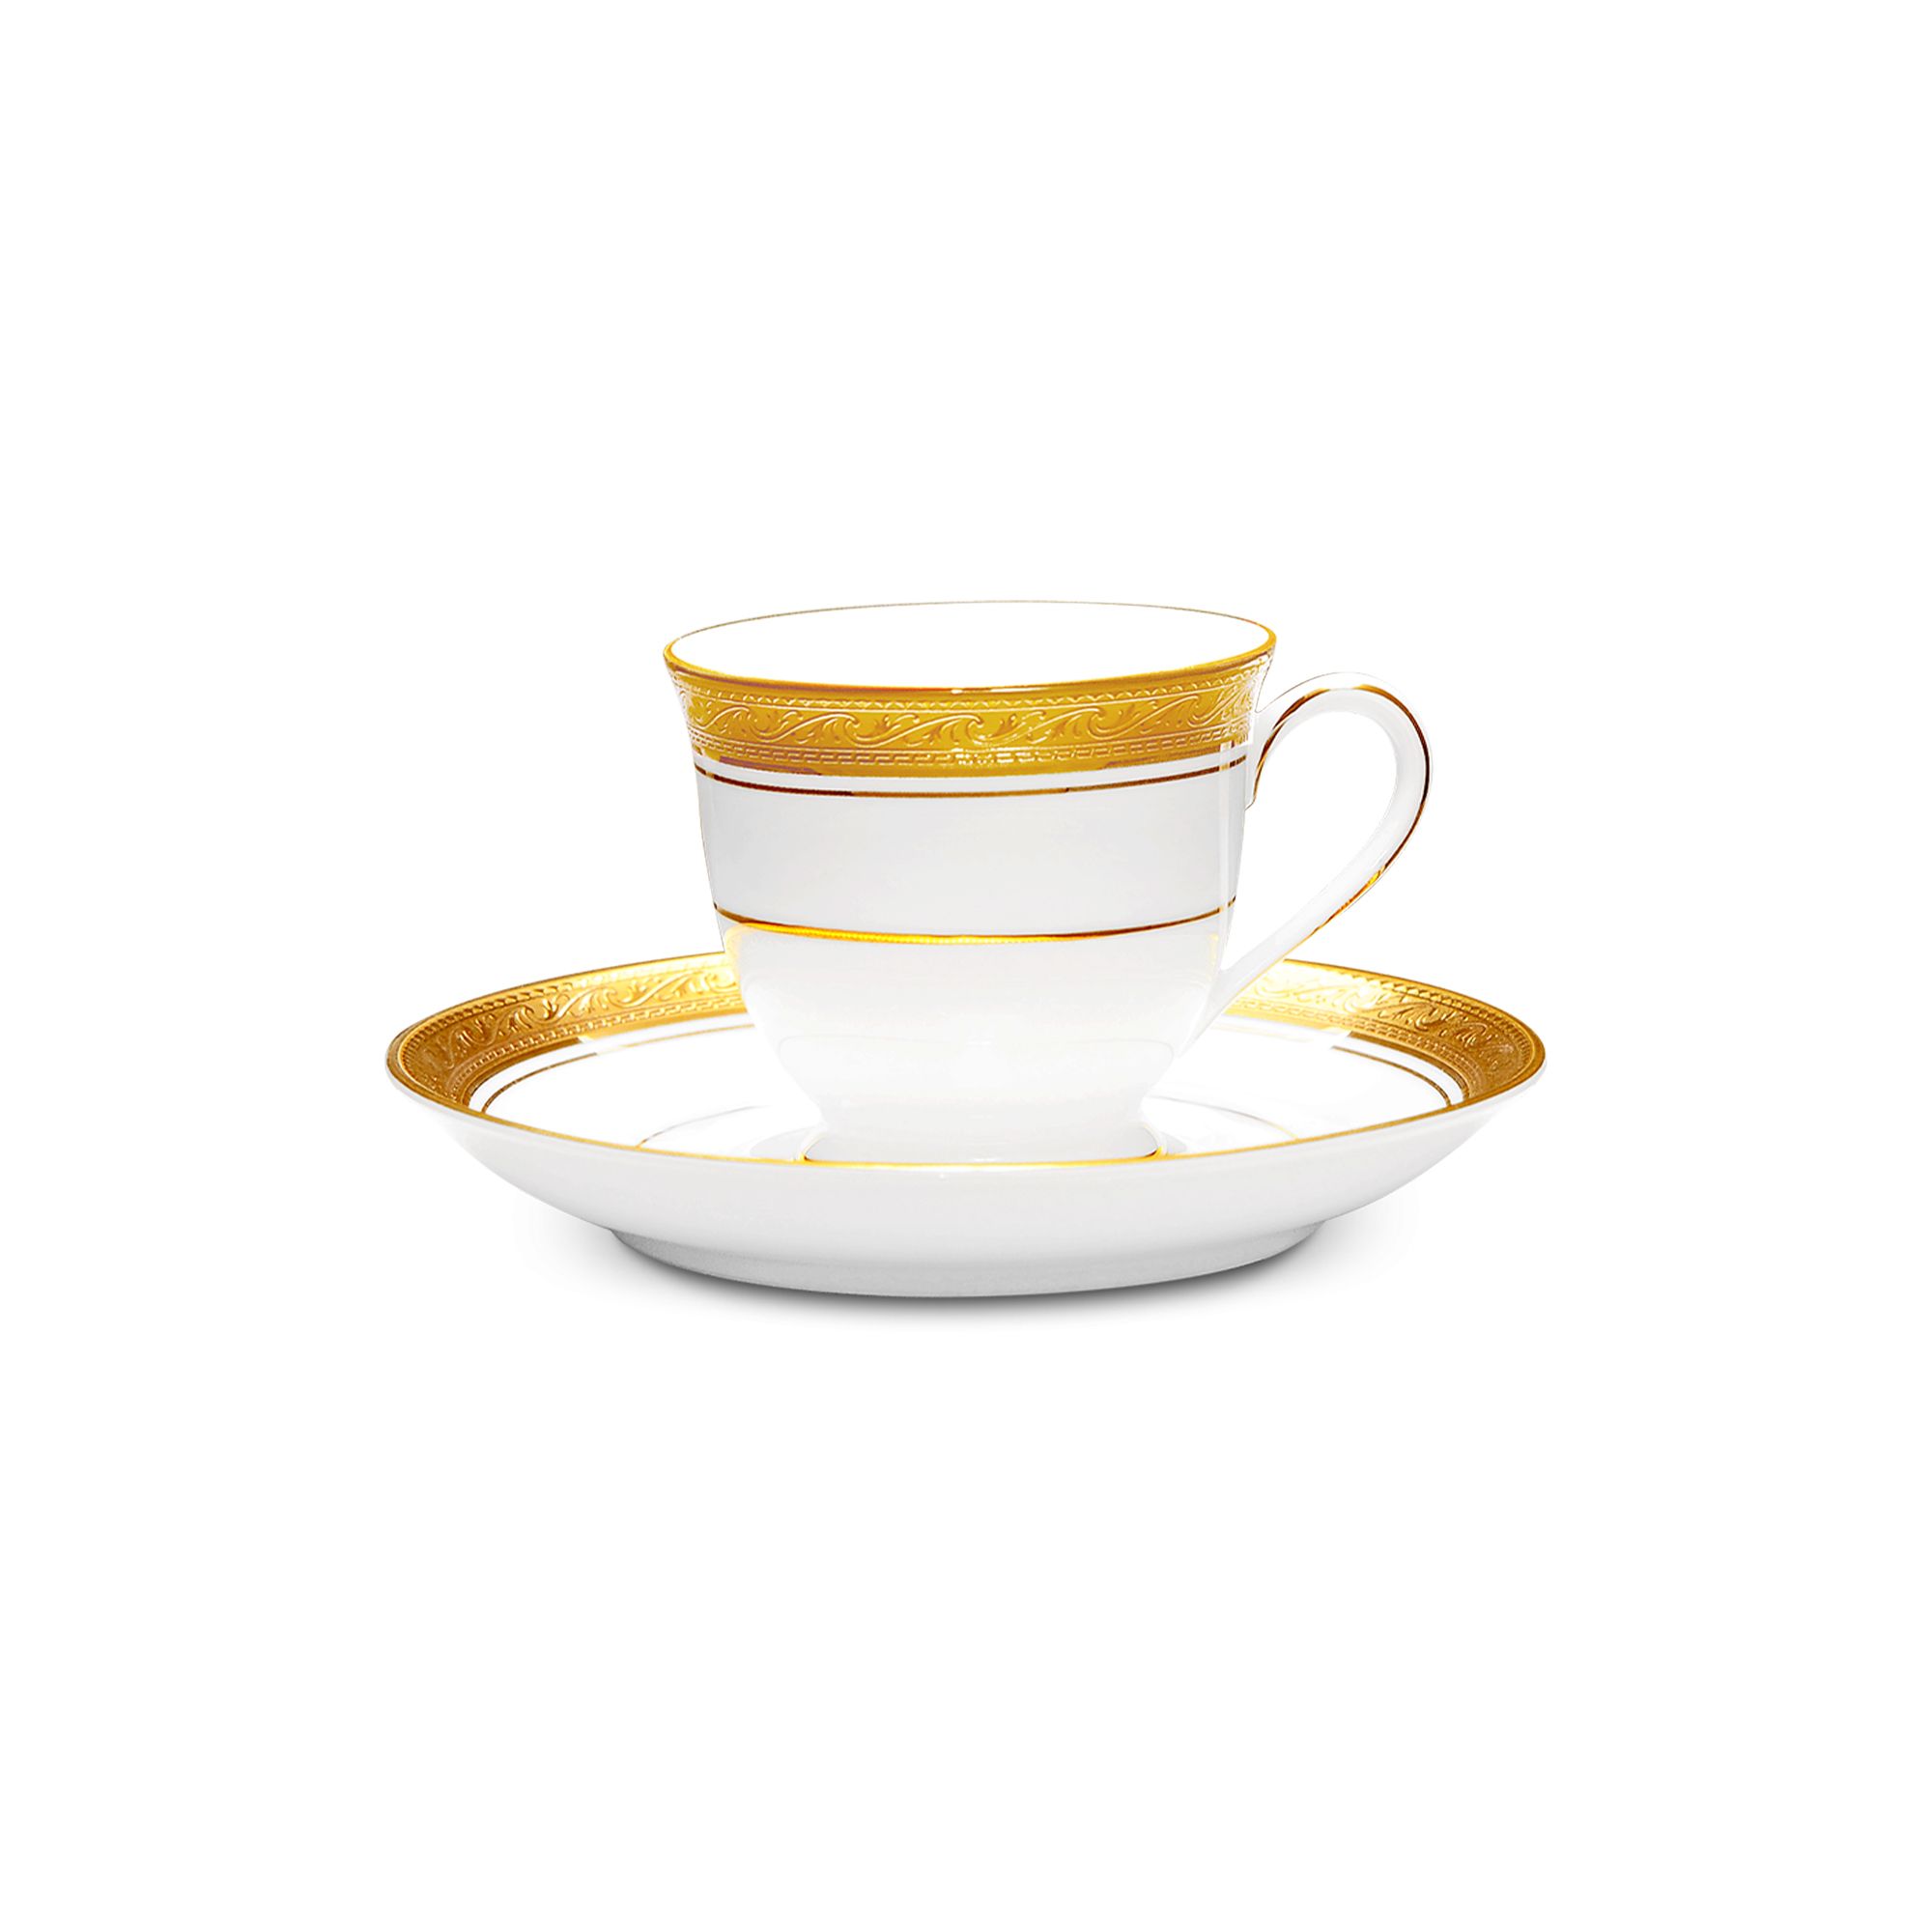  Chén trà (tách trà) kèm đĩa lót dung tích 90ml sứ trắng | Crestwood Gold 4167L-T91392 